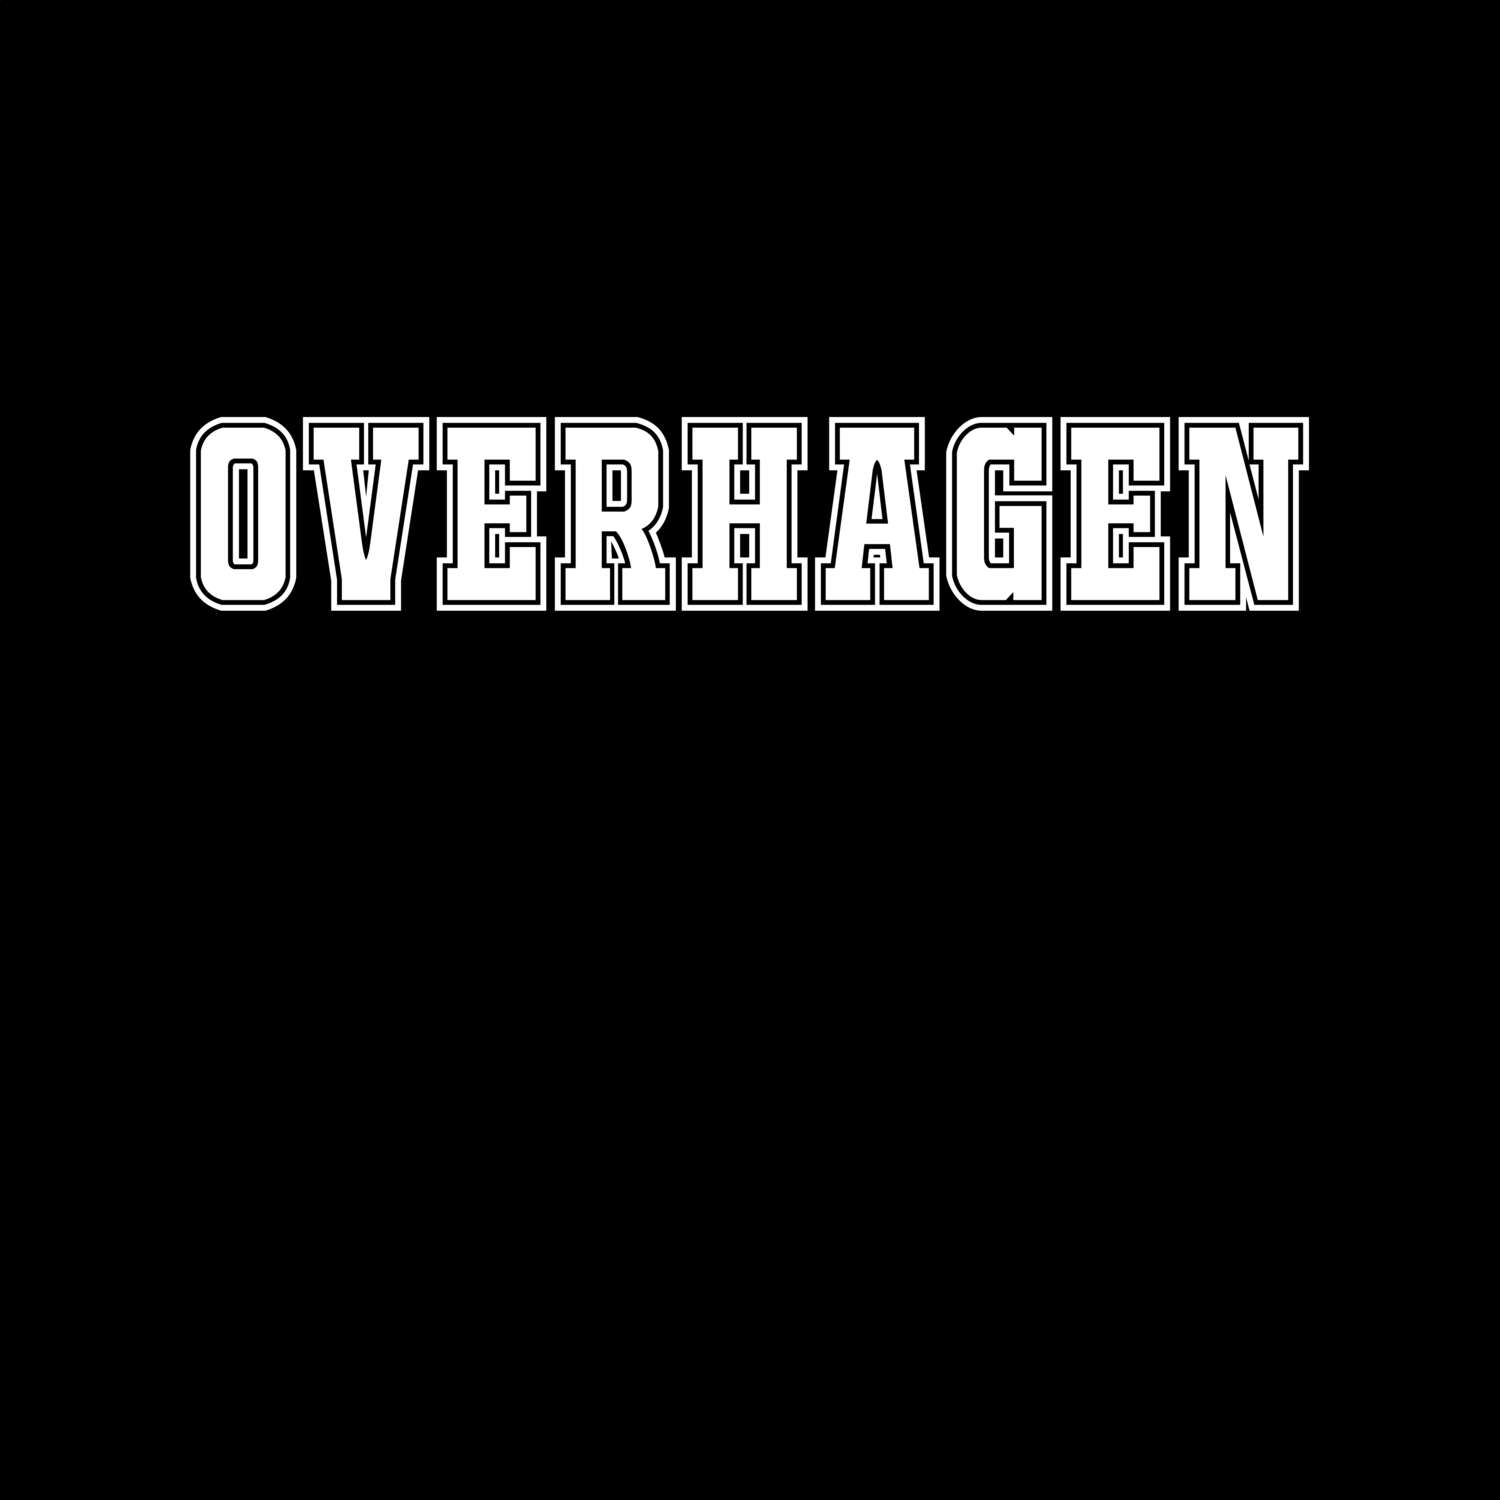 Overhagen T-Shirt »Classic«